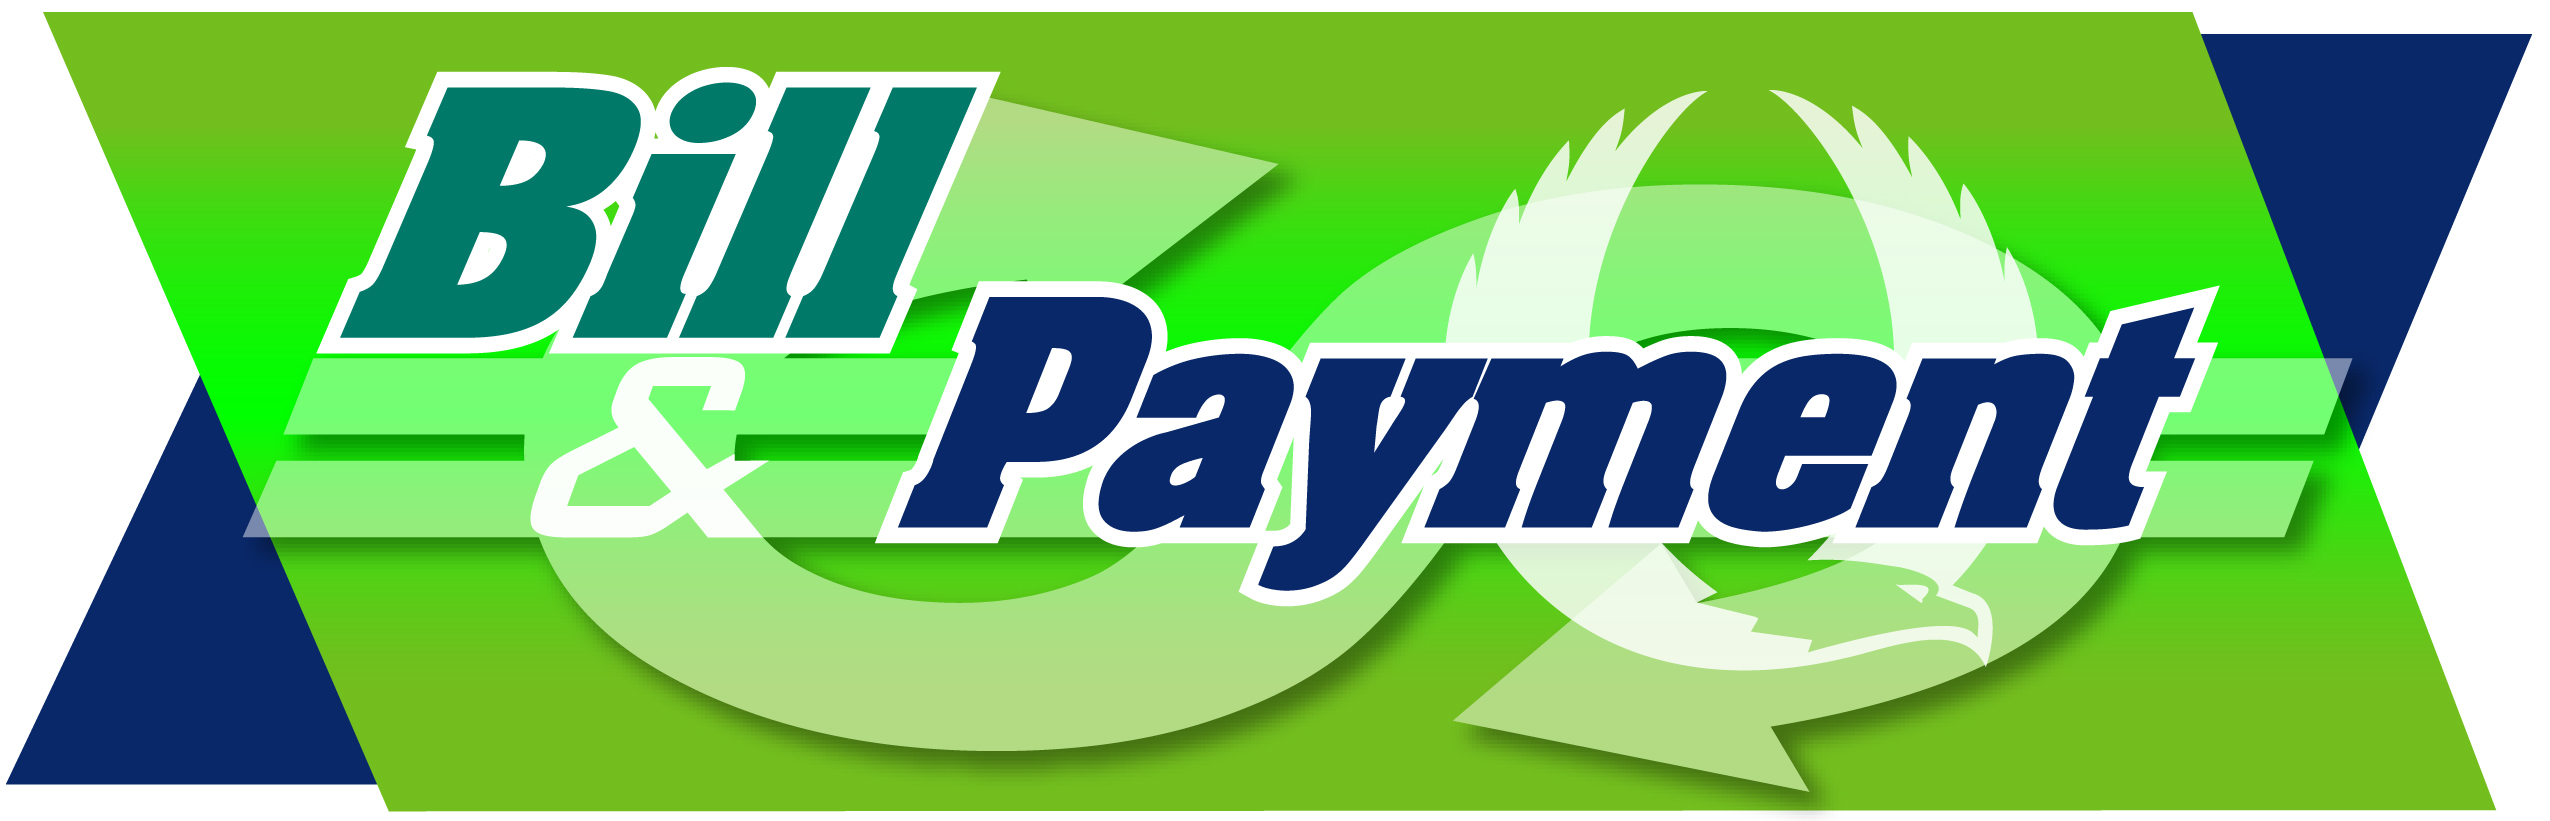 Online Bill Payment Logo photo - 1